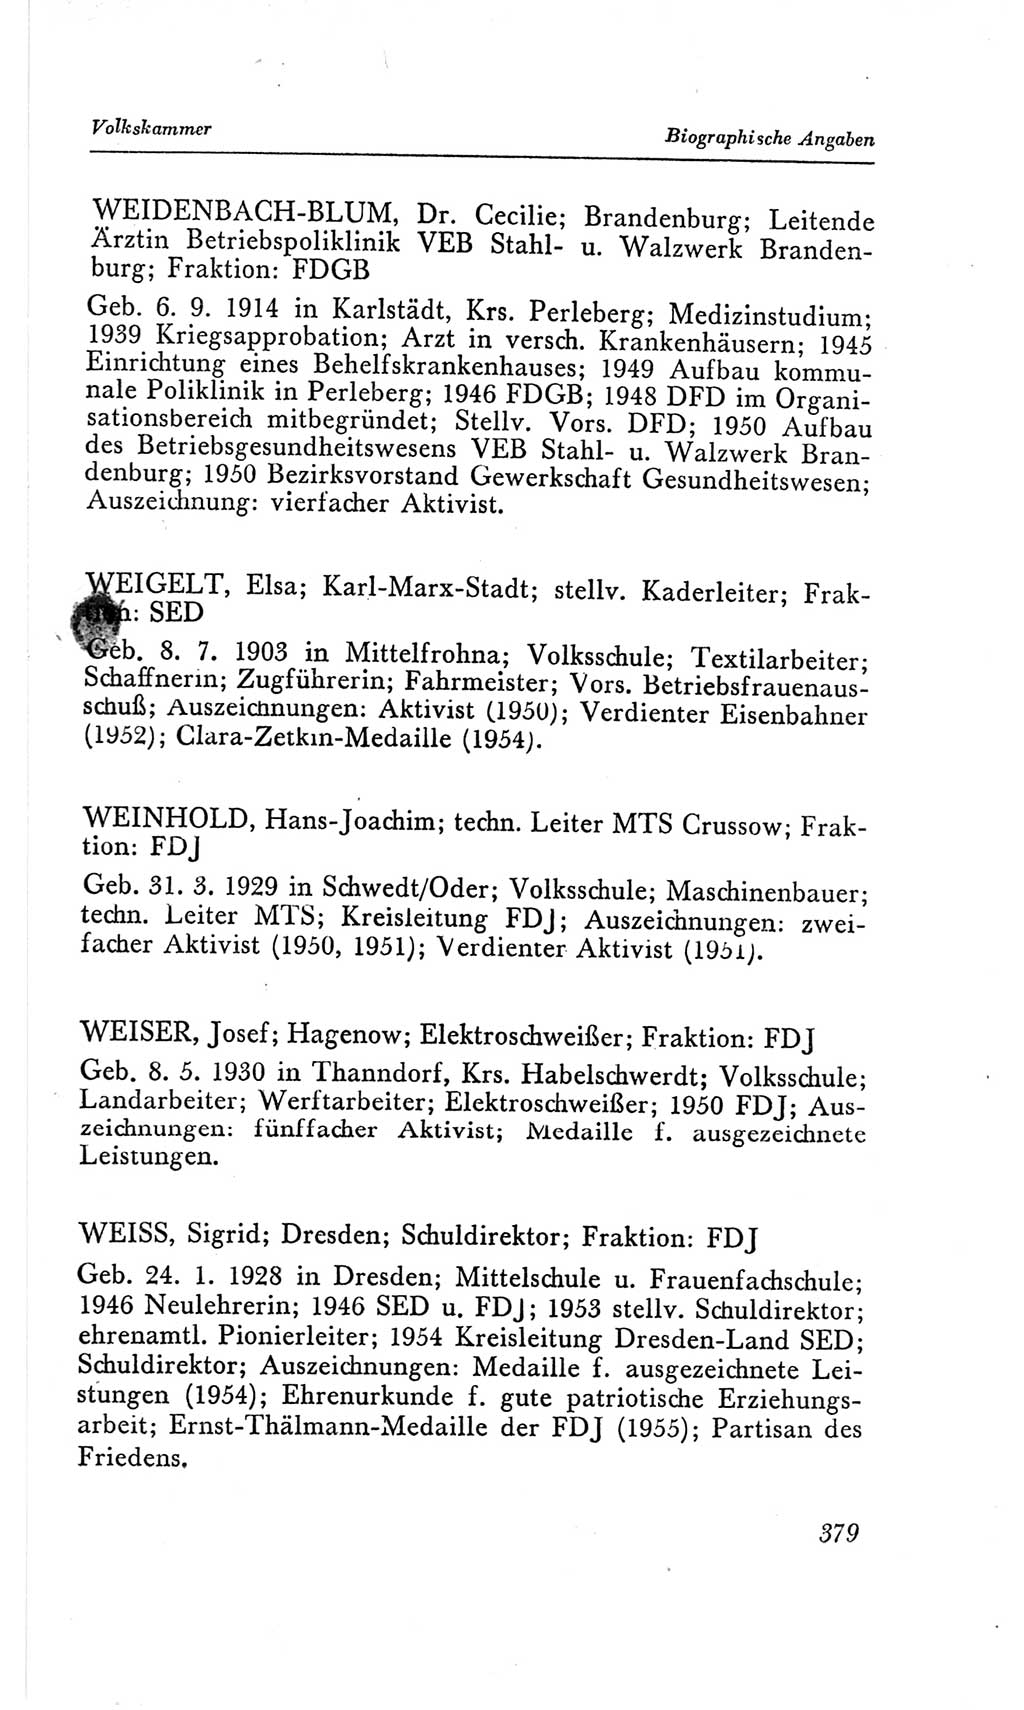 Handbuch der Volkskammer (VK) der Deutschen Demokratischen Republik (DDR), 2. Wahlperiode 1954-1958, Seite 379 (Hdb. VK. DDR, 2. WP. 1954-1958, S. 379)